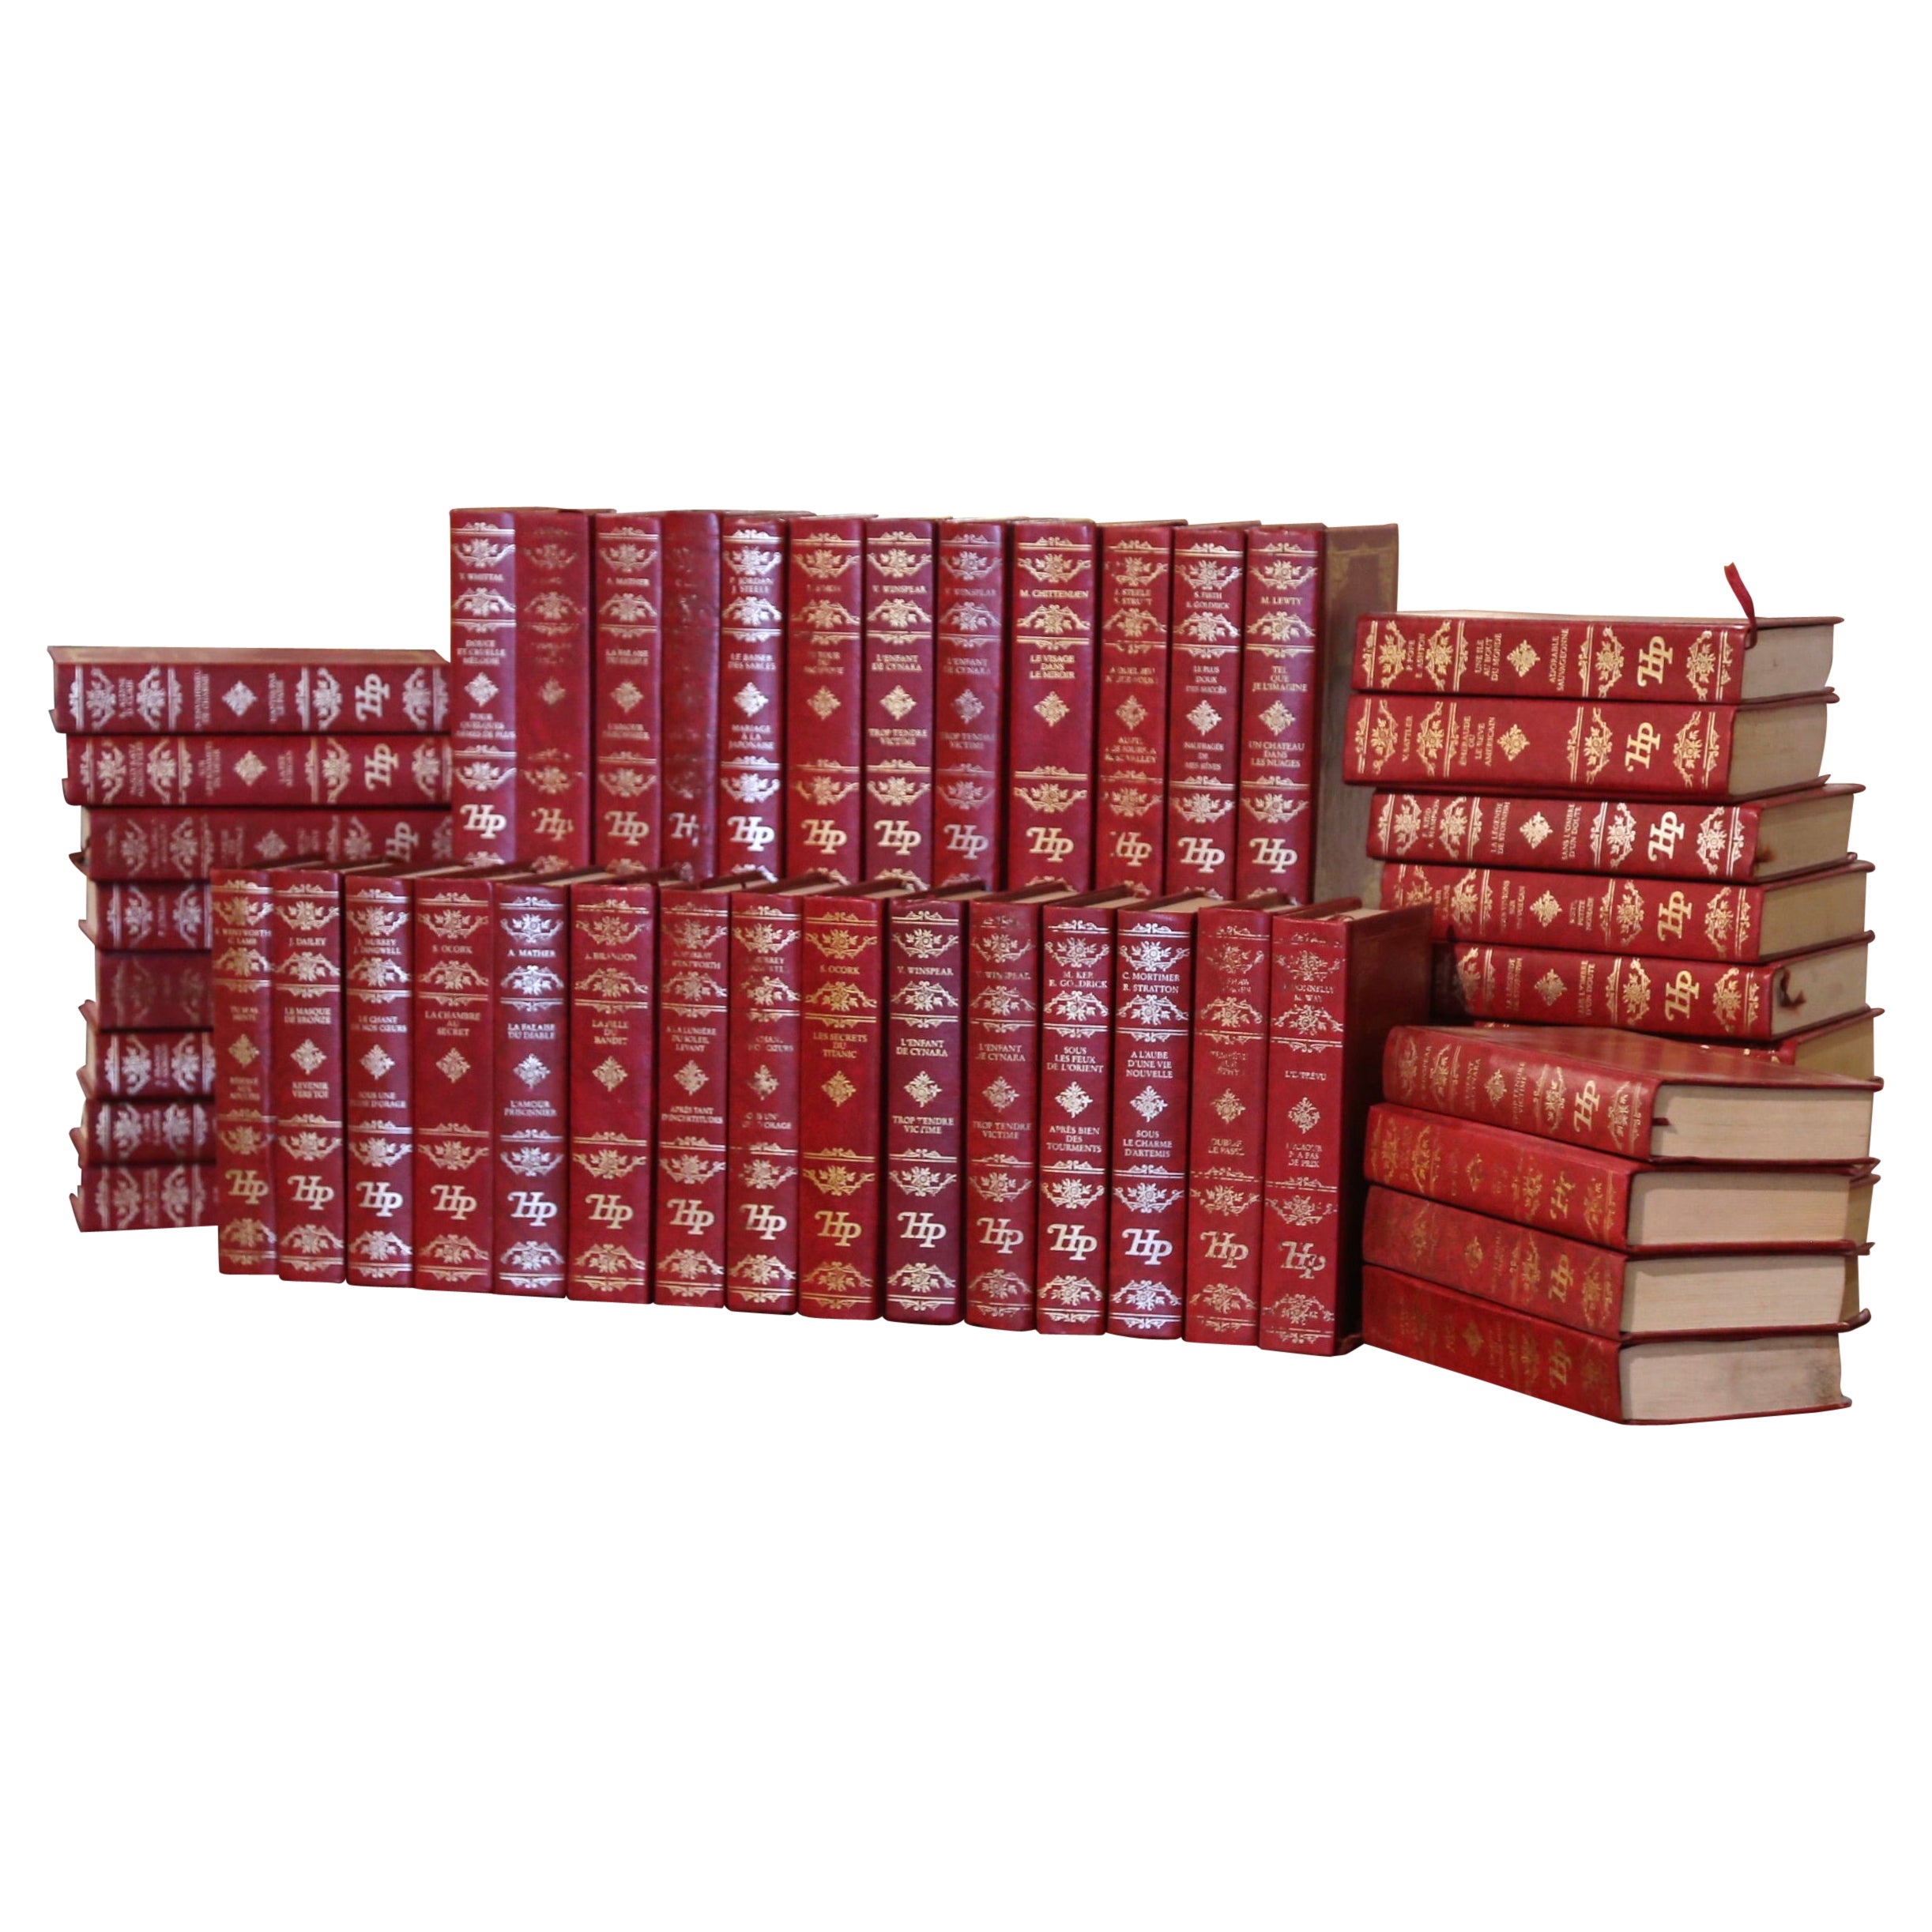 Rote gebundene Harlekin-Prestige-Bücher in französischer Sprache, datiert 1982-1989, 48er-Set